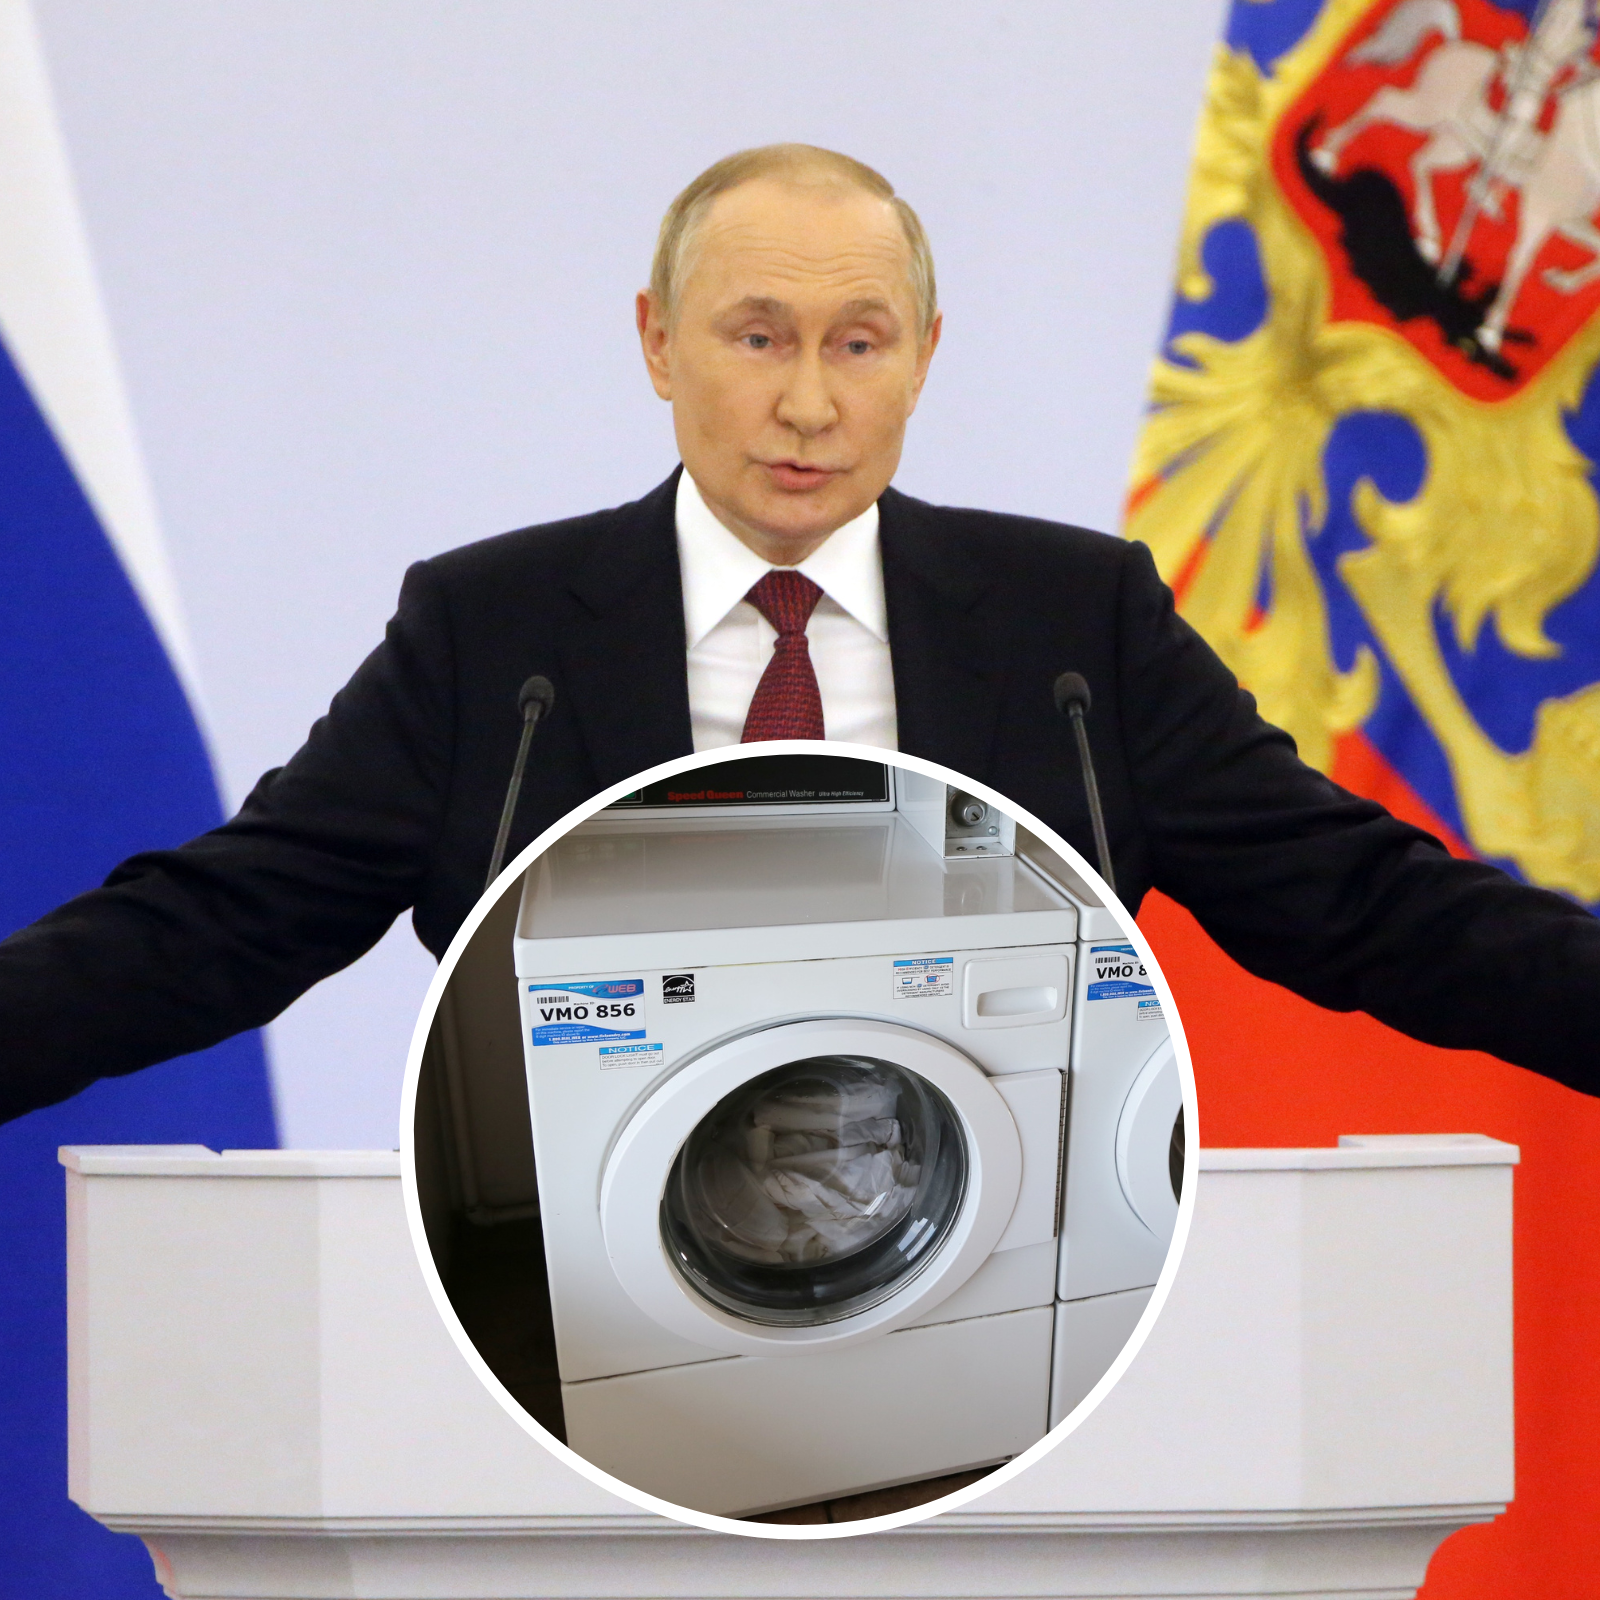 vladimir-putin-carries-washing-machine.png